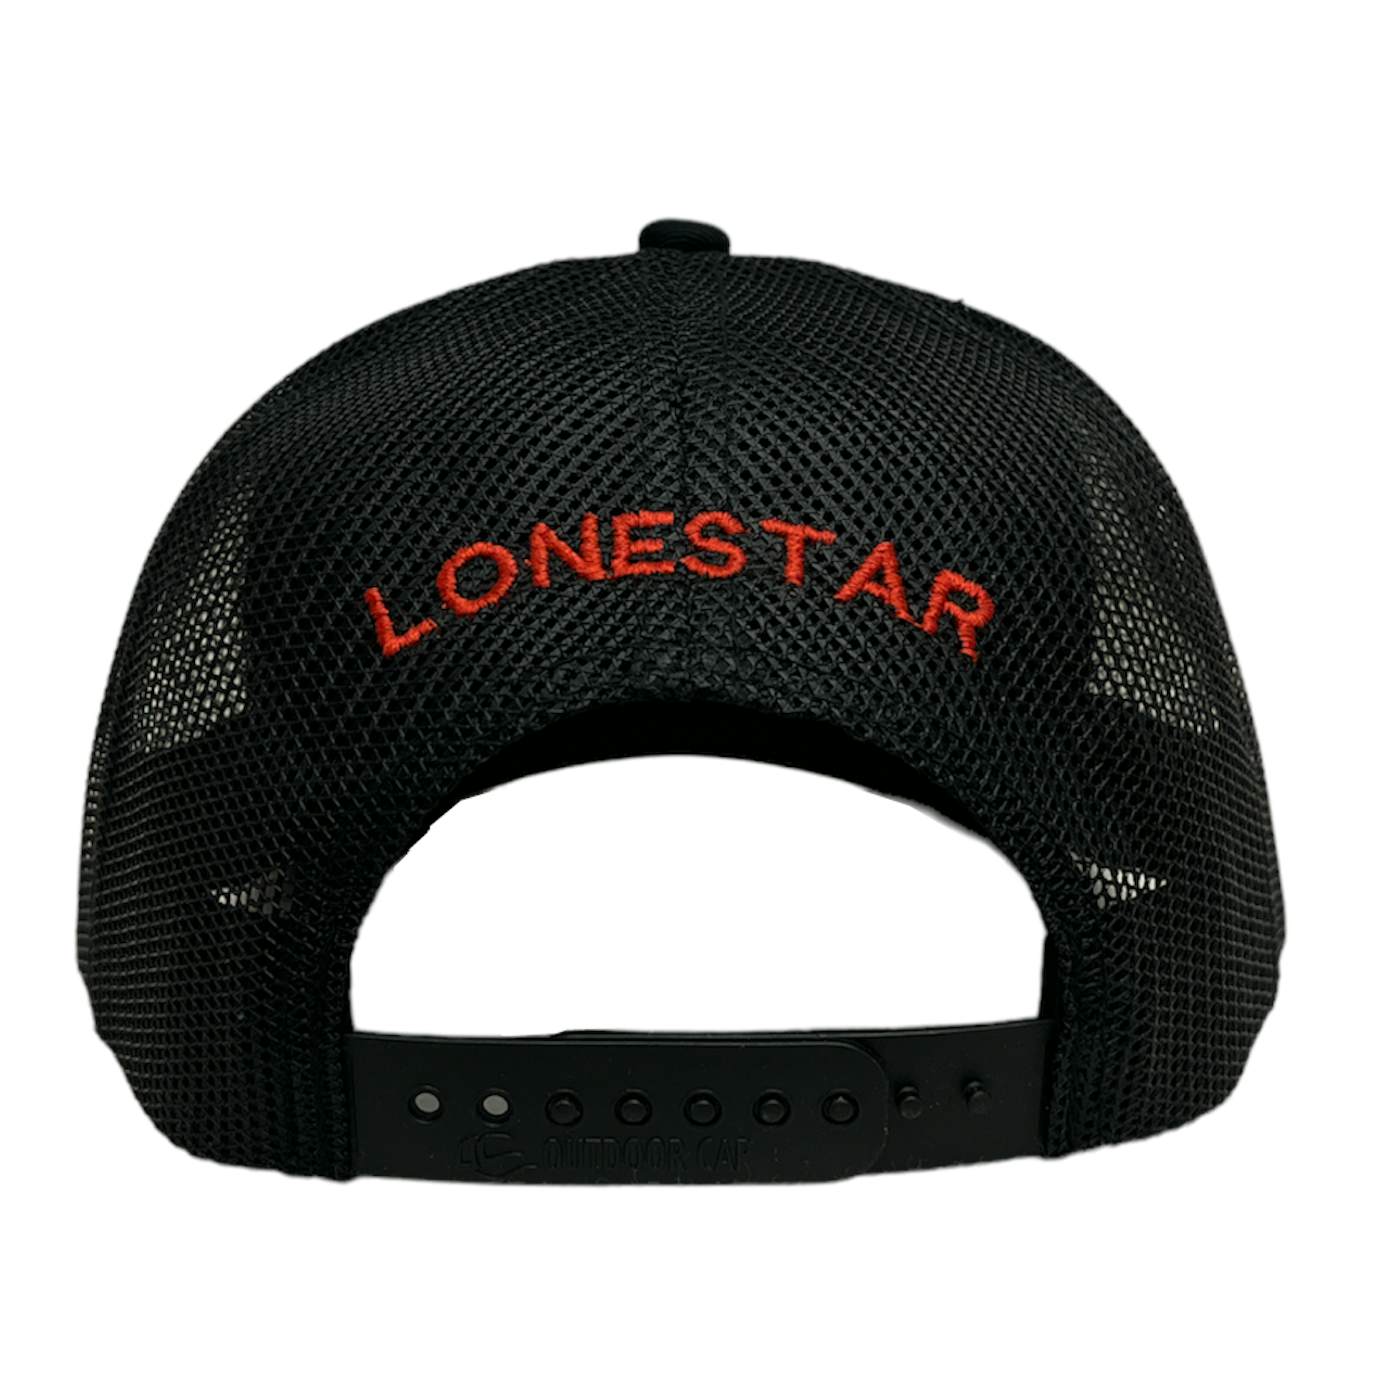 Lonestar 10 to 1 Ballcap